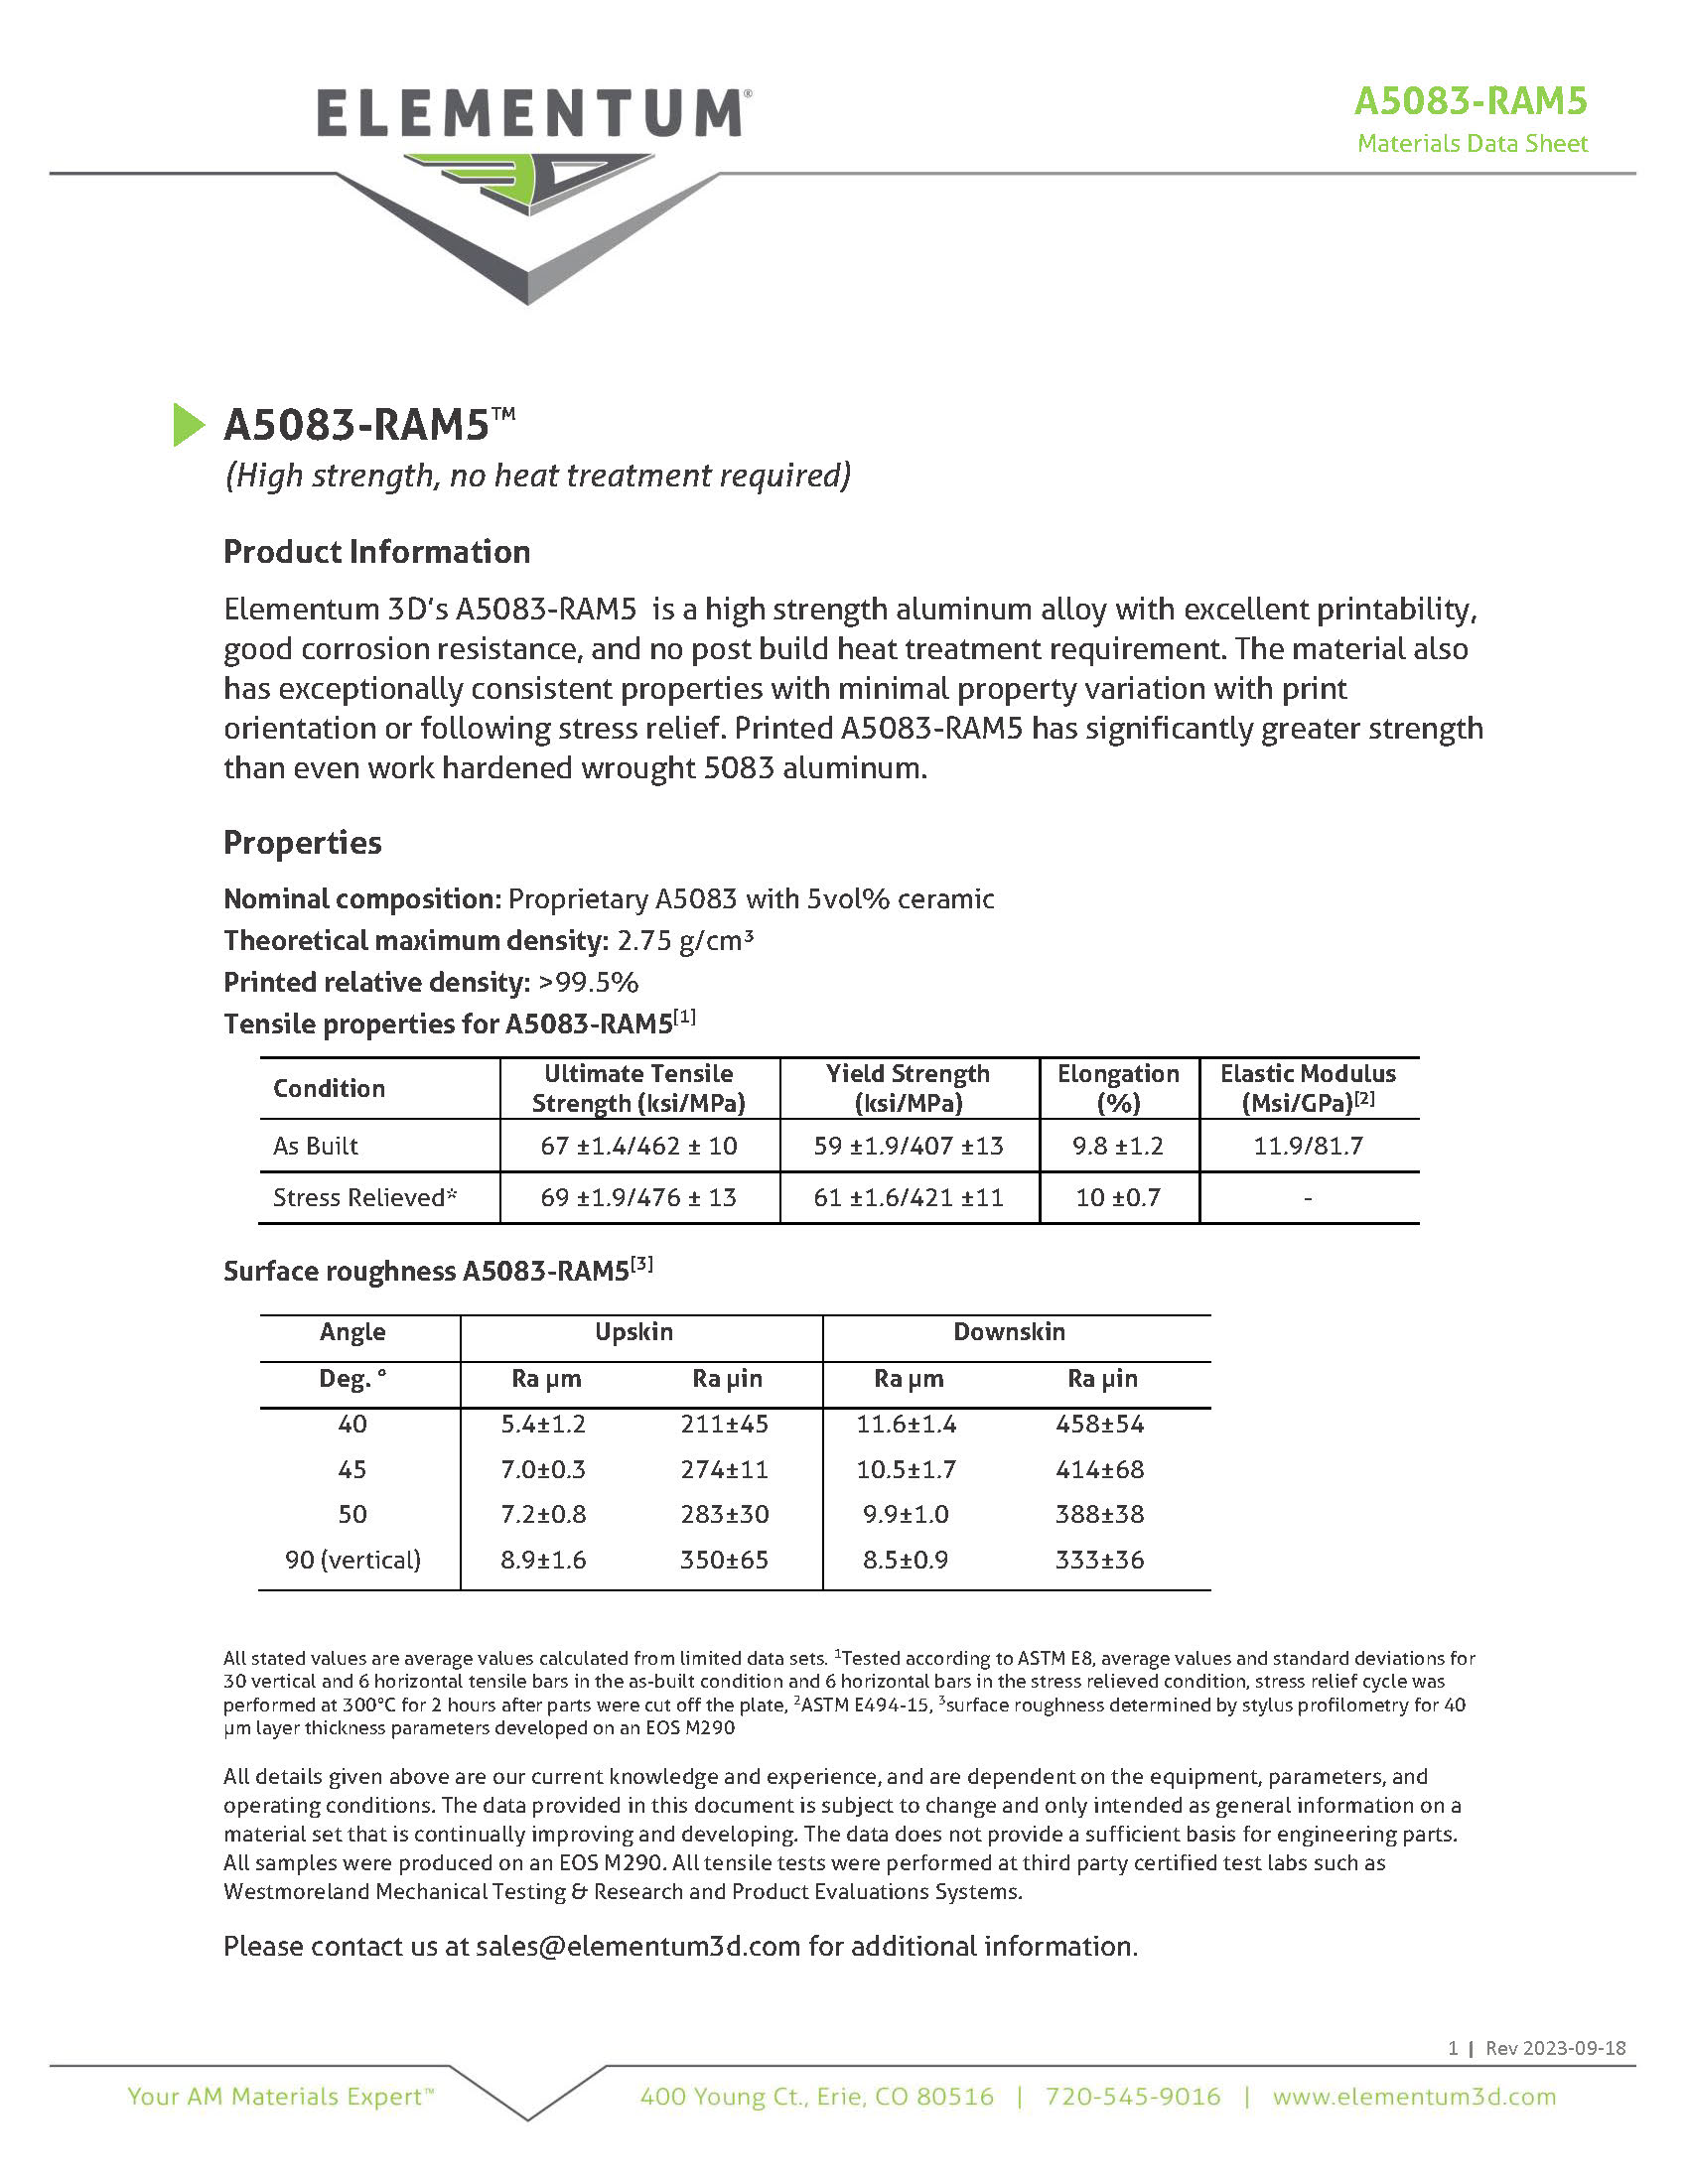 A5083-Ram5 Data Sheet